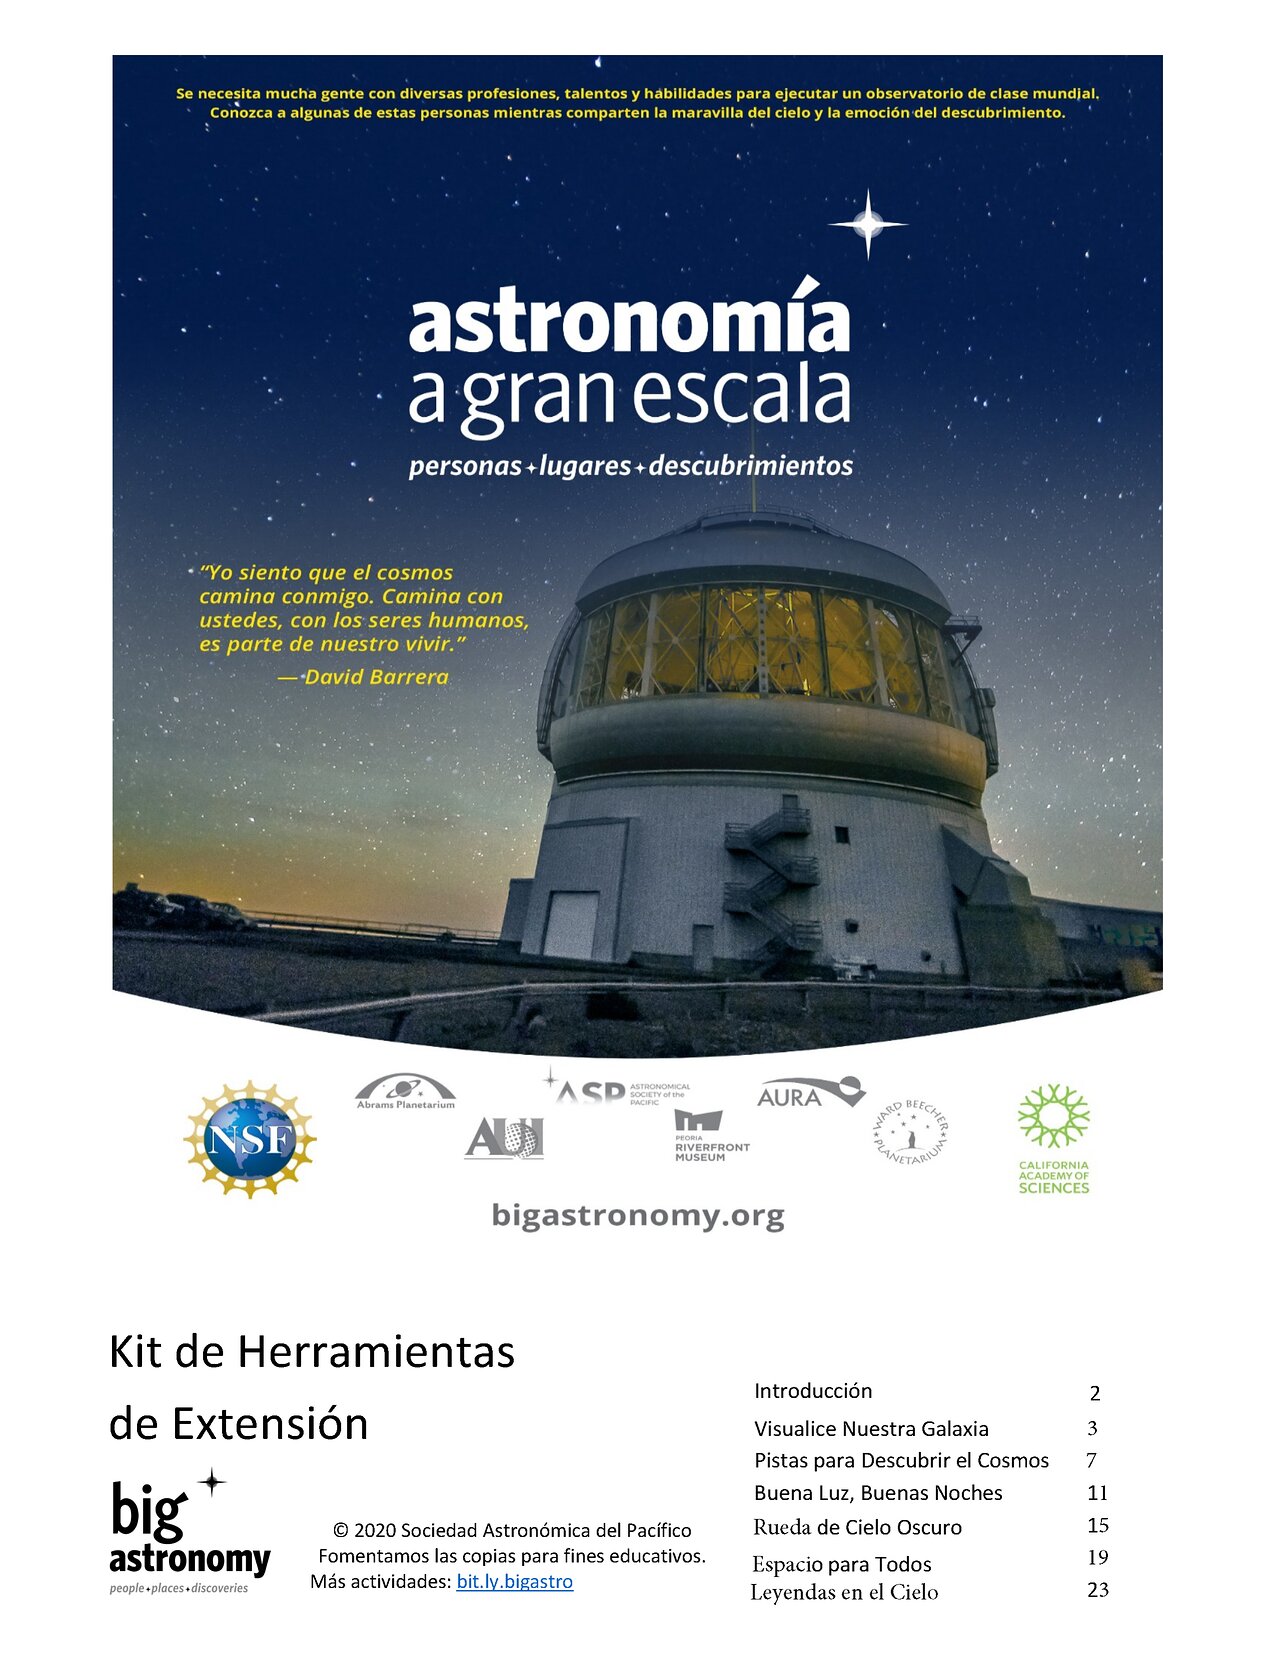 Educational Material: Astronomía a gran escala